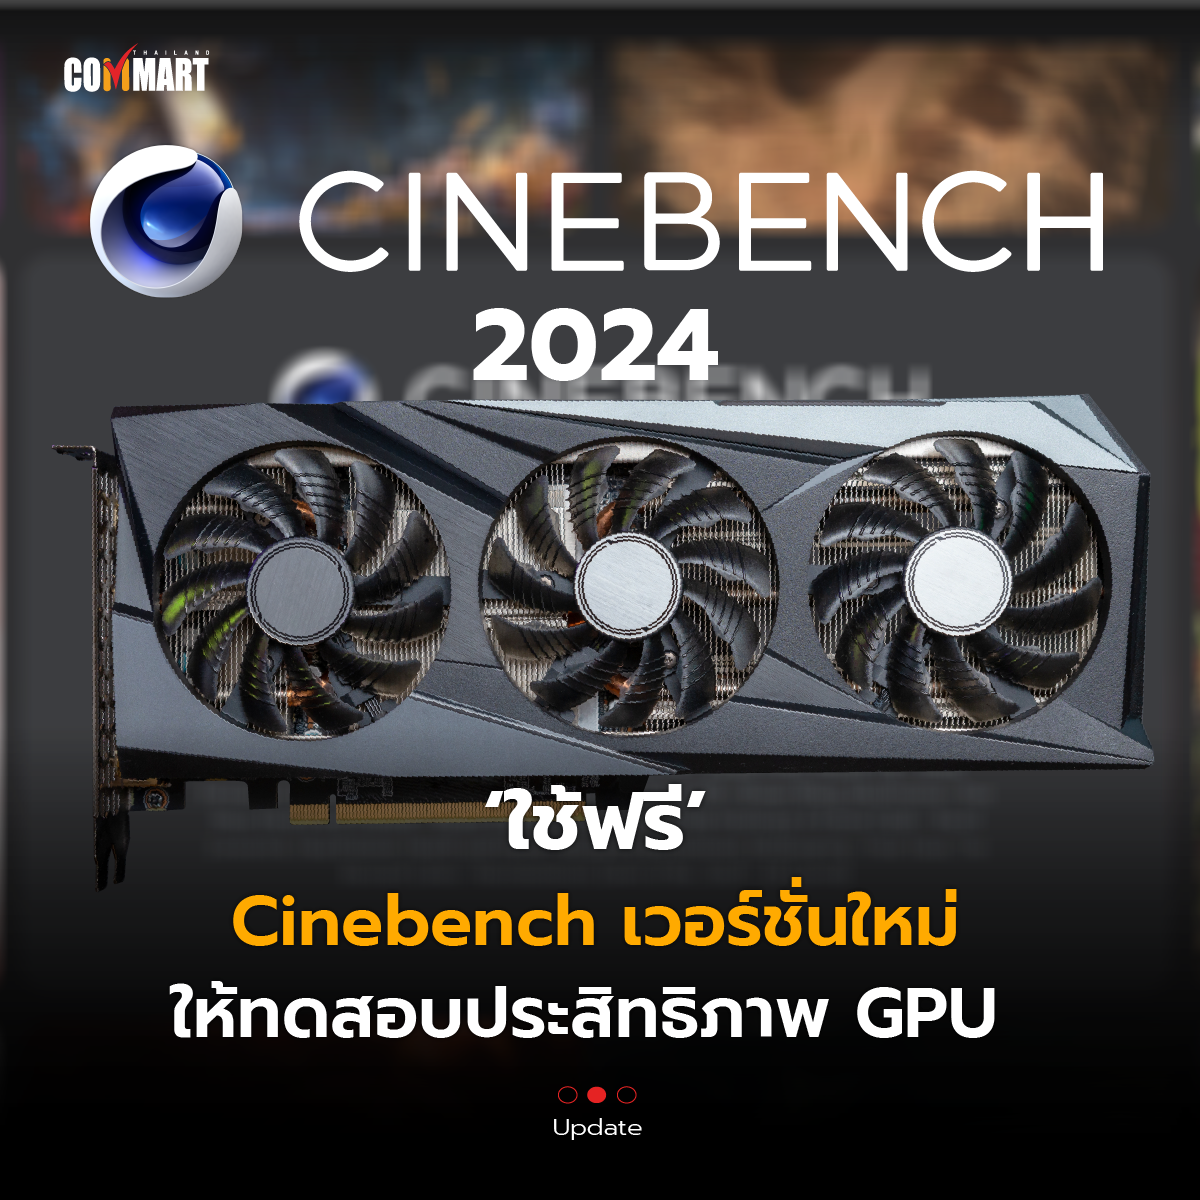 ใช้ฟรี Cinebench  2024 เวอร์ชั่นใหม่ ให้ทดสอบประสิทธิภาพ GPU